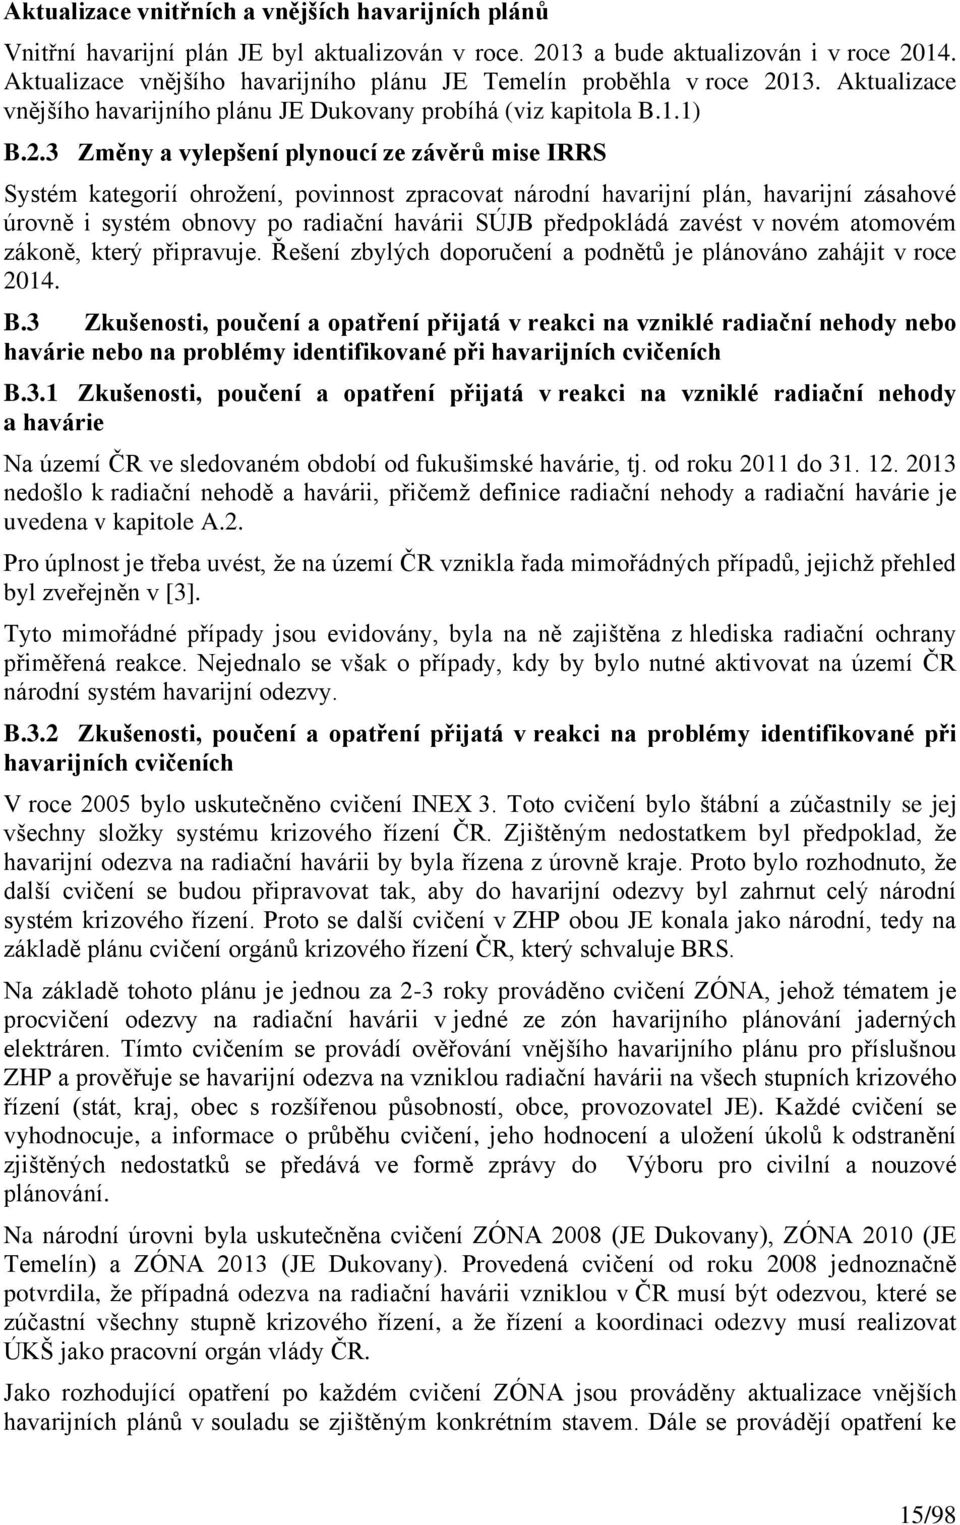 13. Aktualizace vnějšího havarijního plánu JE Dukovany probíhá (viz kapitola B.1.1) B.2.